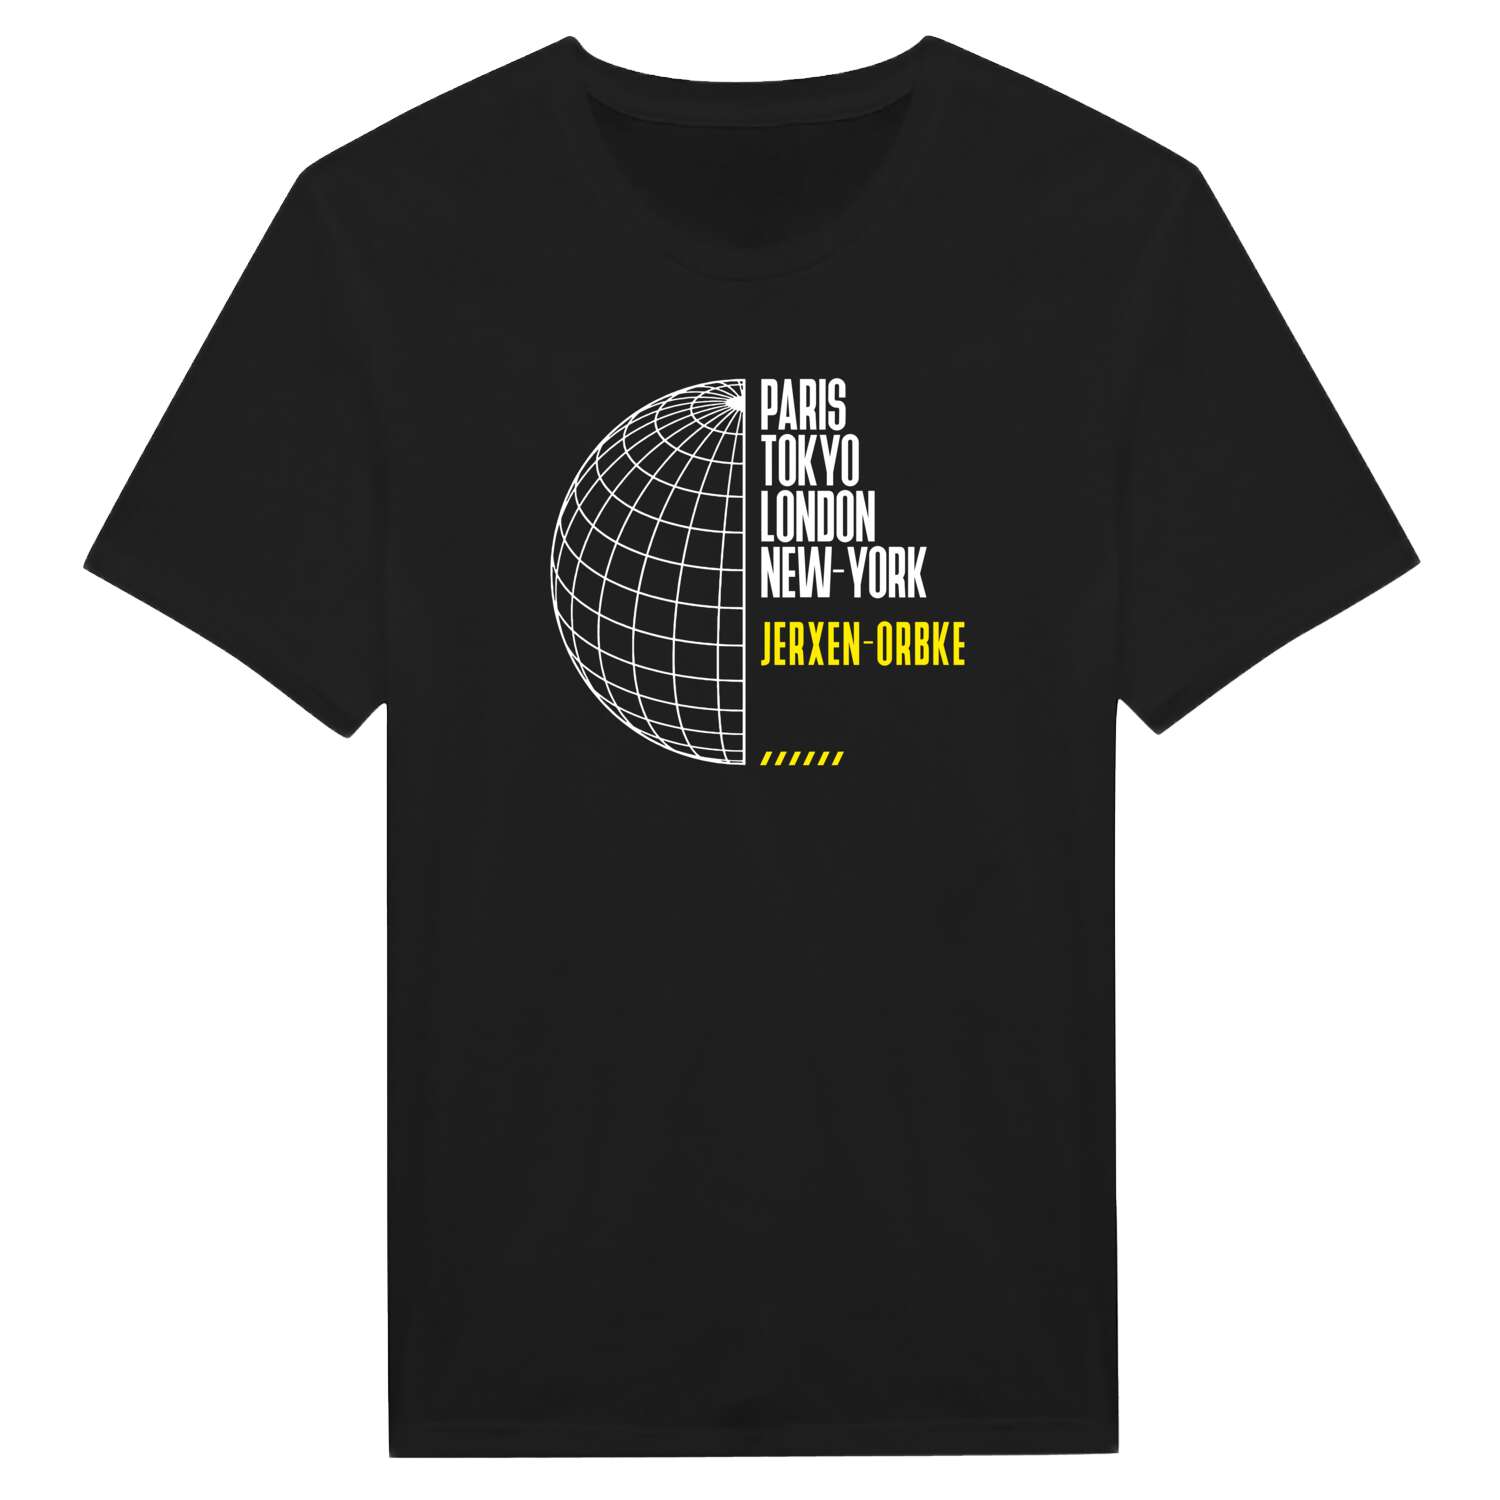 Jerxen-Orbke T-Shirt »Paris Tokyo London«